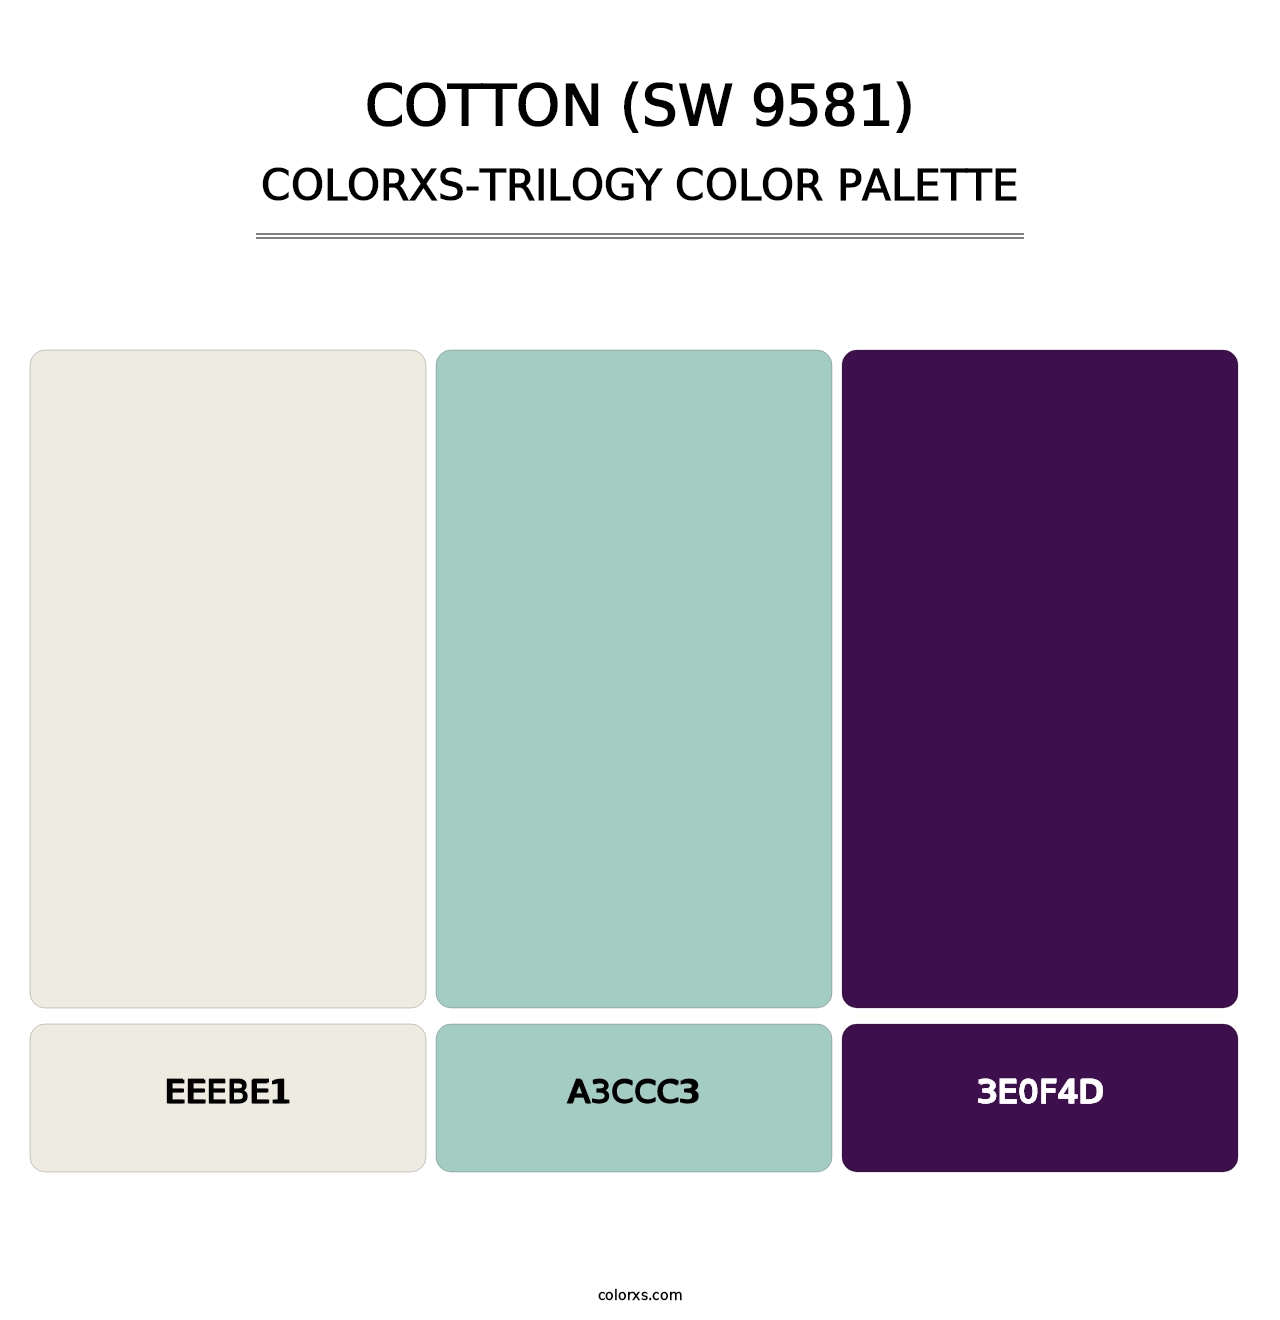 Cotton (SW 9581) - Colorxs Trilogy Palette